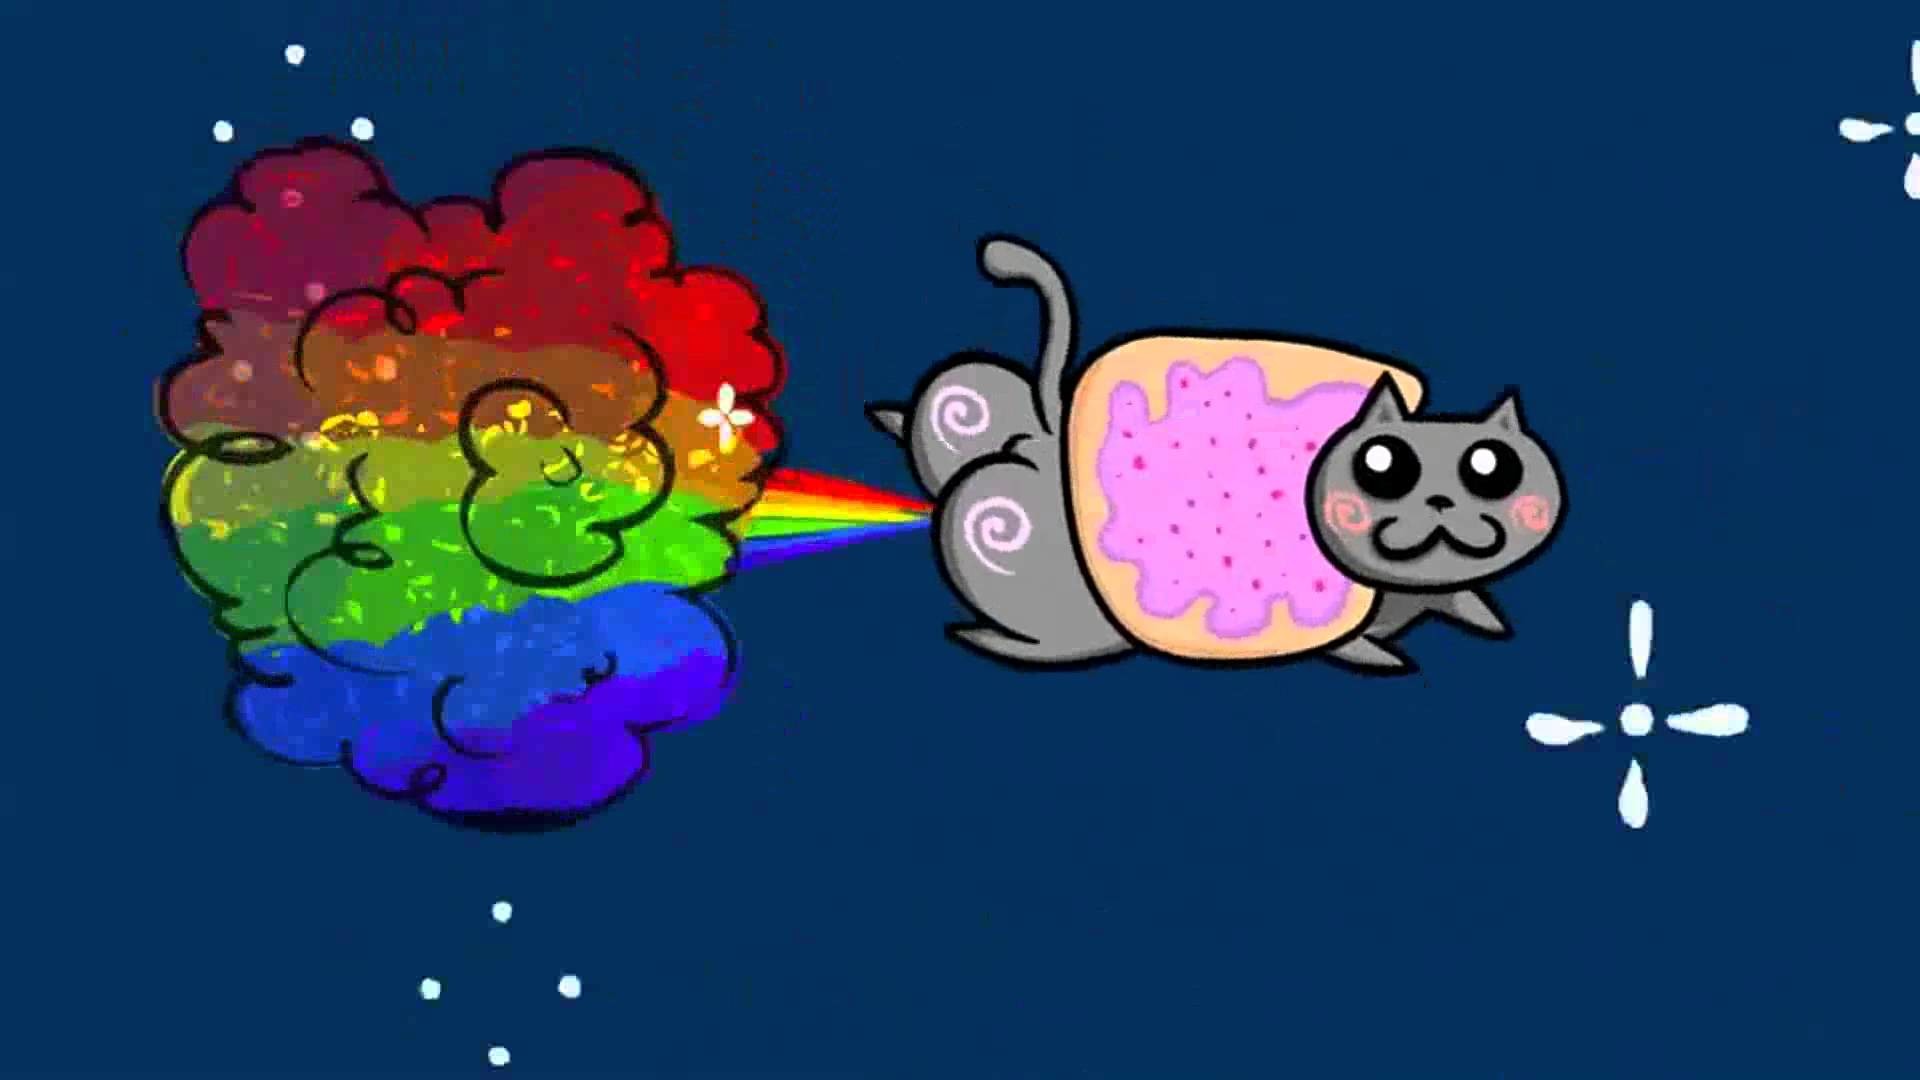 1920x1080 wallpaper.wiki-Nyan-Cat-Photo-Download-Free-PIC-